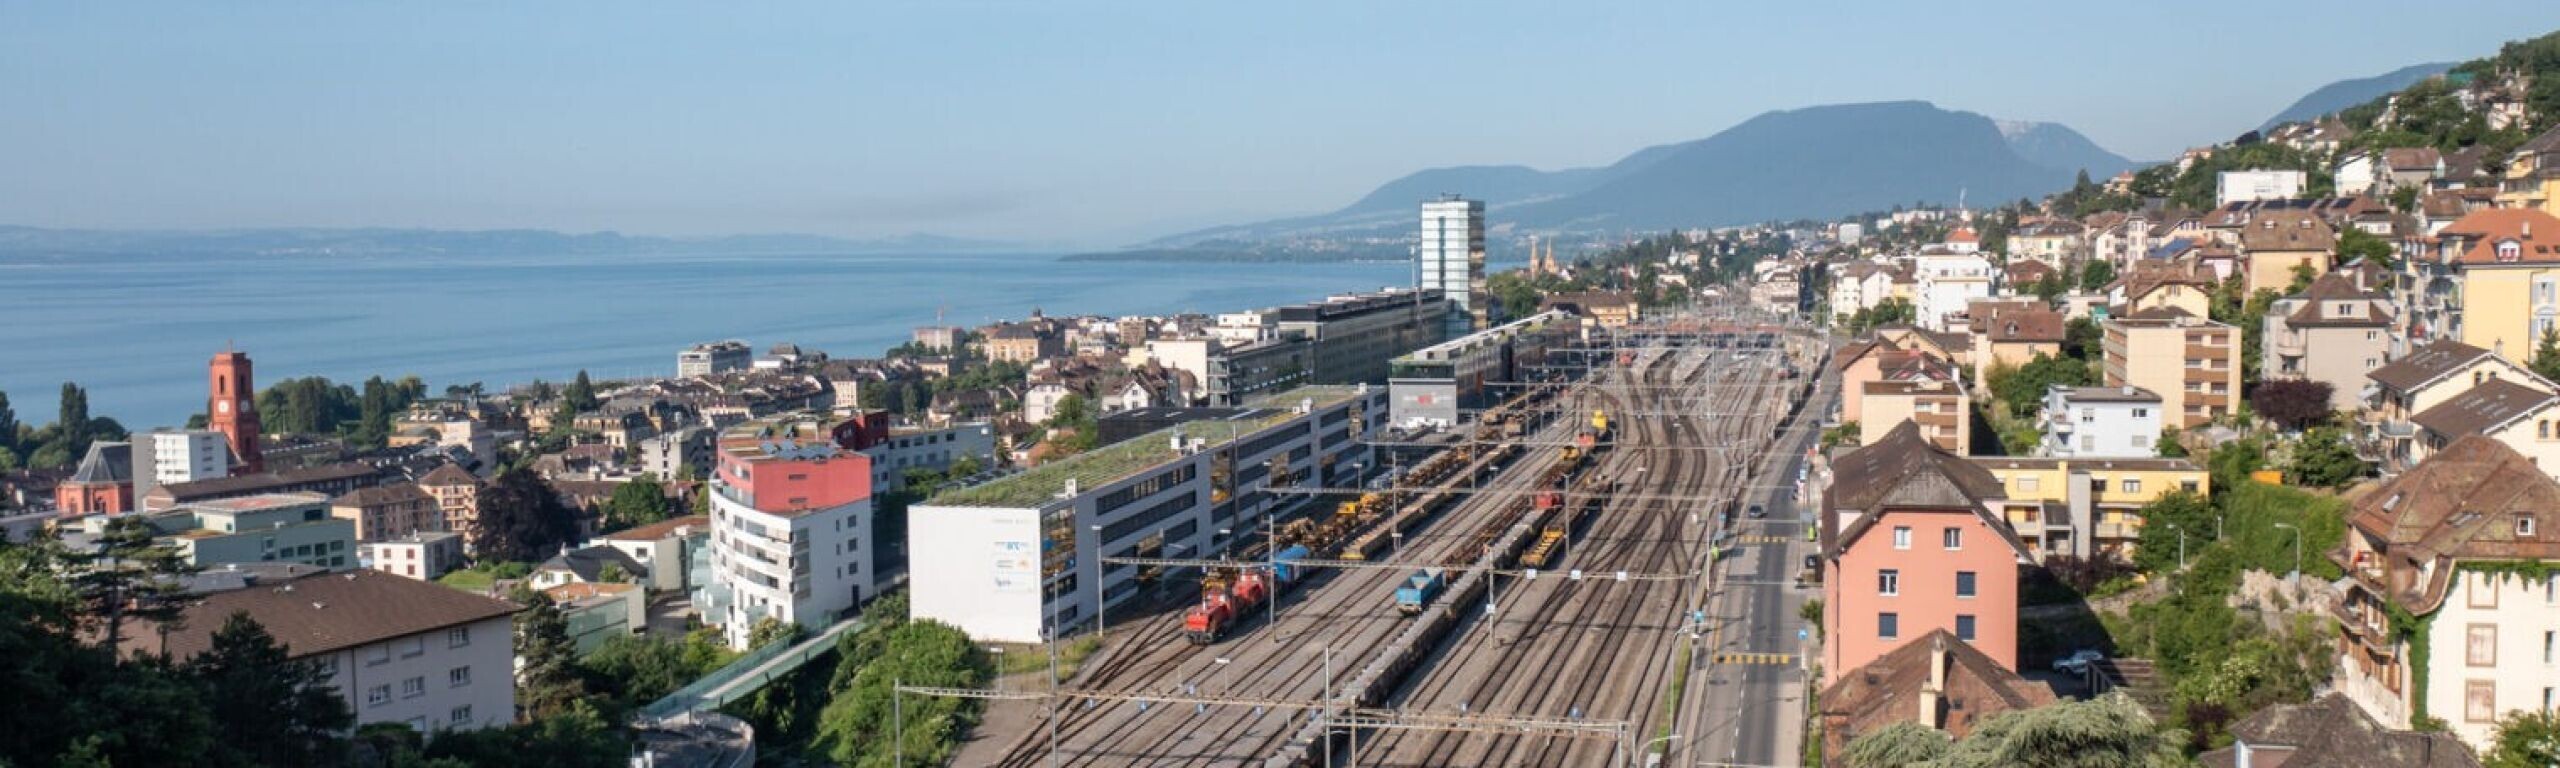 Vue de la gare de Neuchâtel vue de dessus